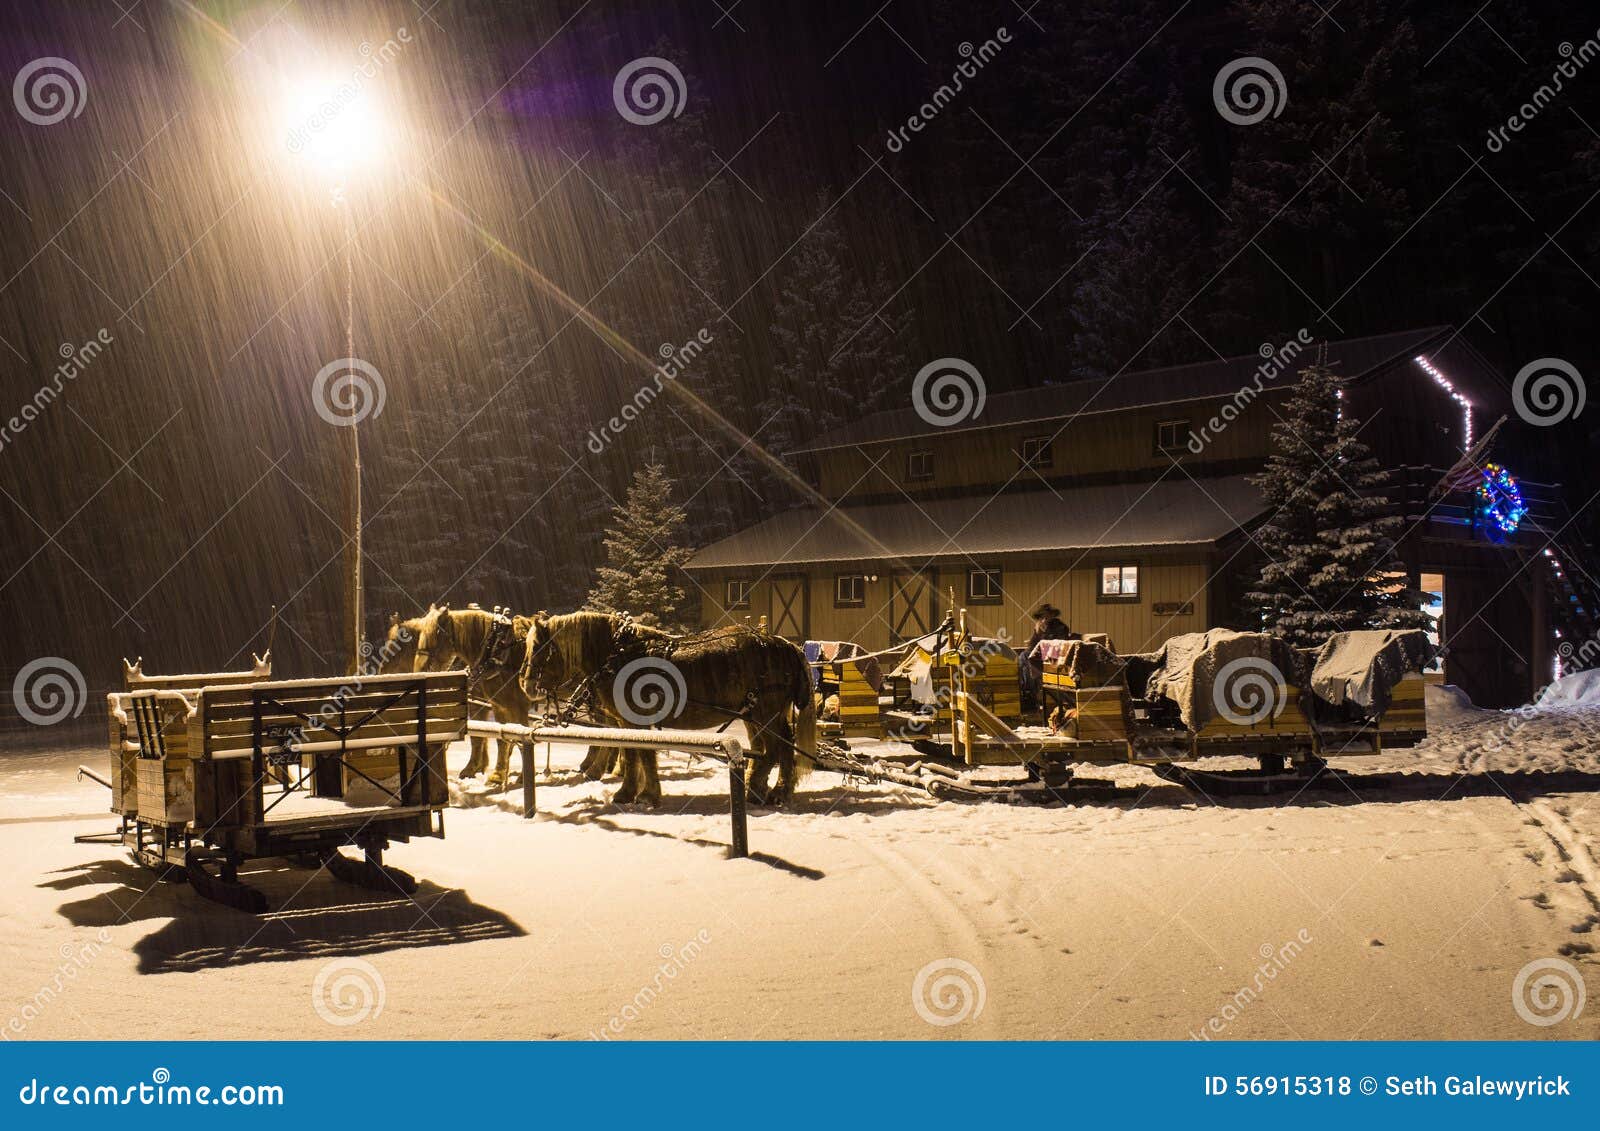 horse drawn sleigh waits